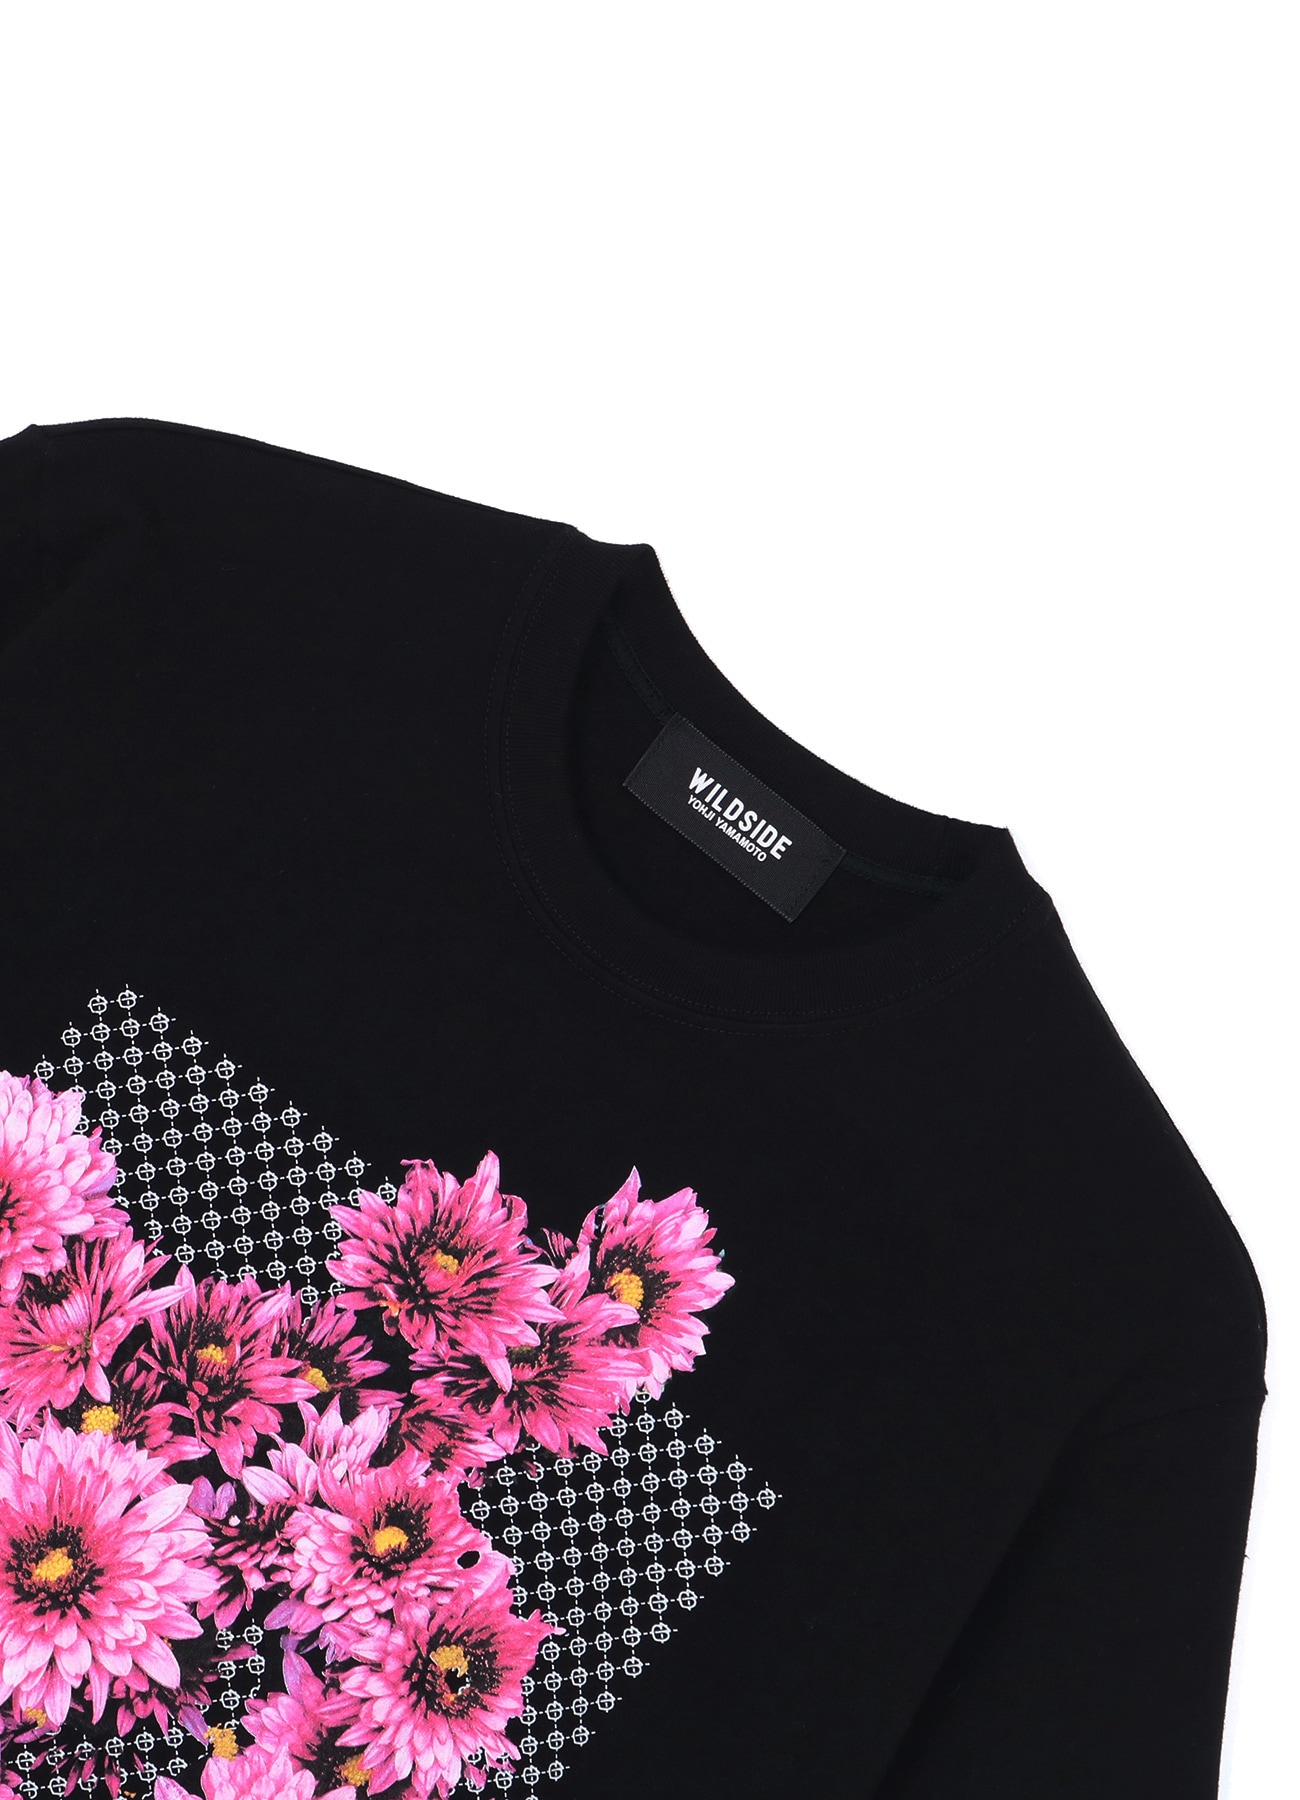 WILDSIDE × CHIVAS REGAL PINK FLOWER T-Shirt